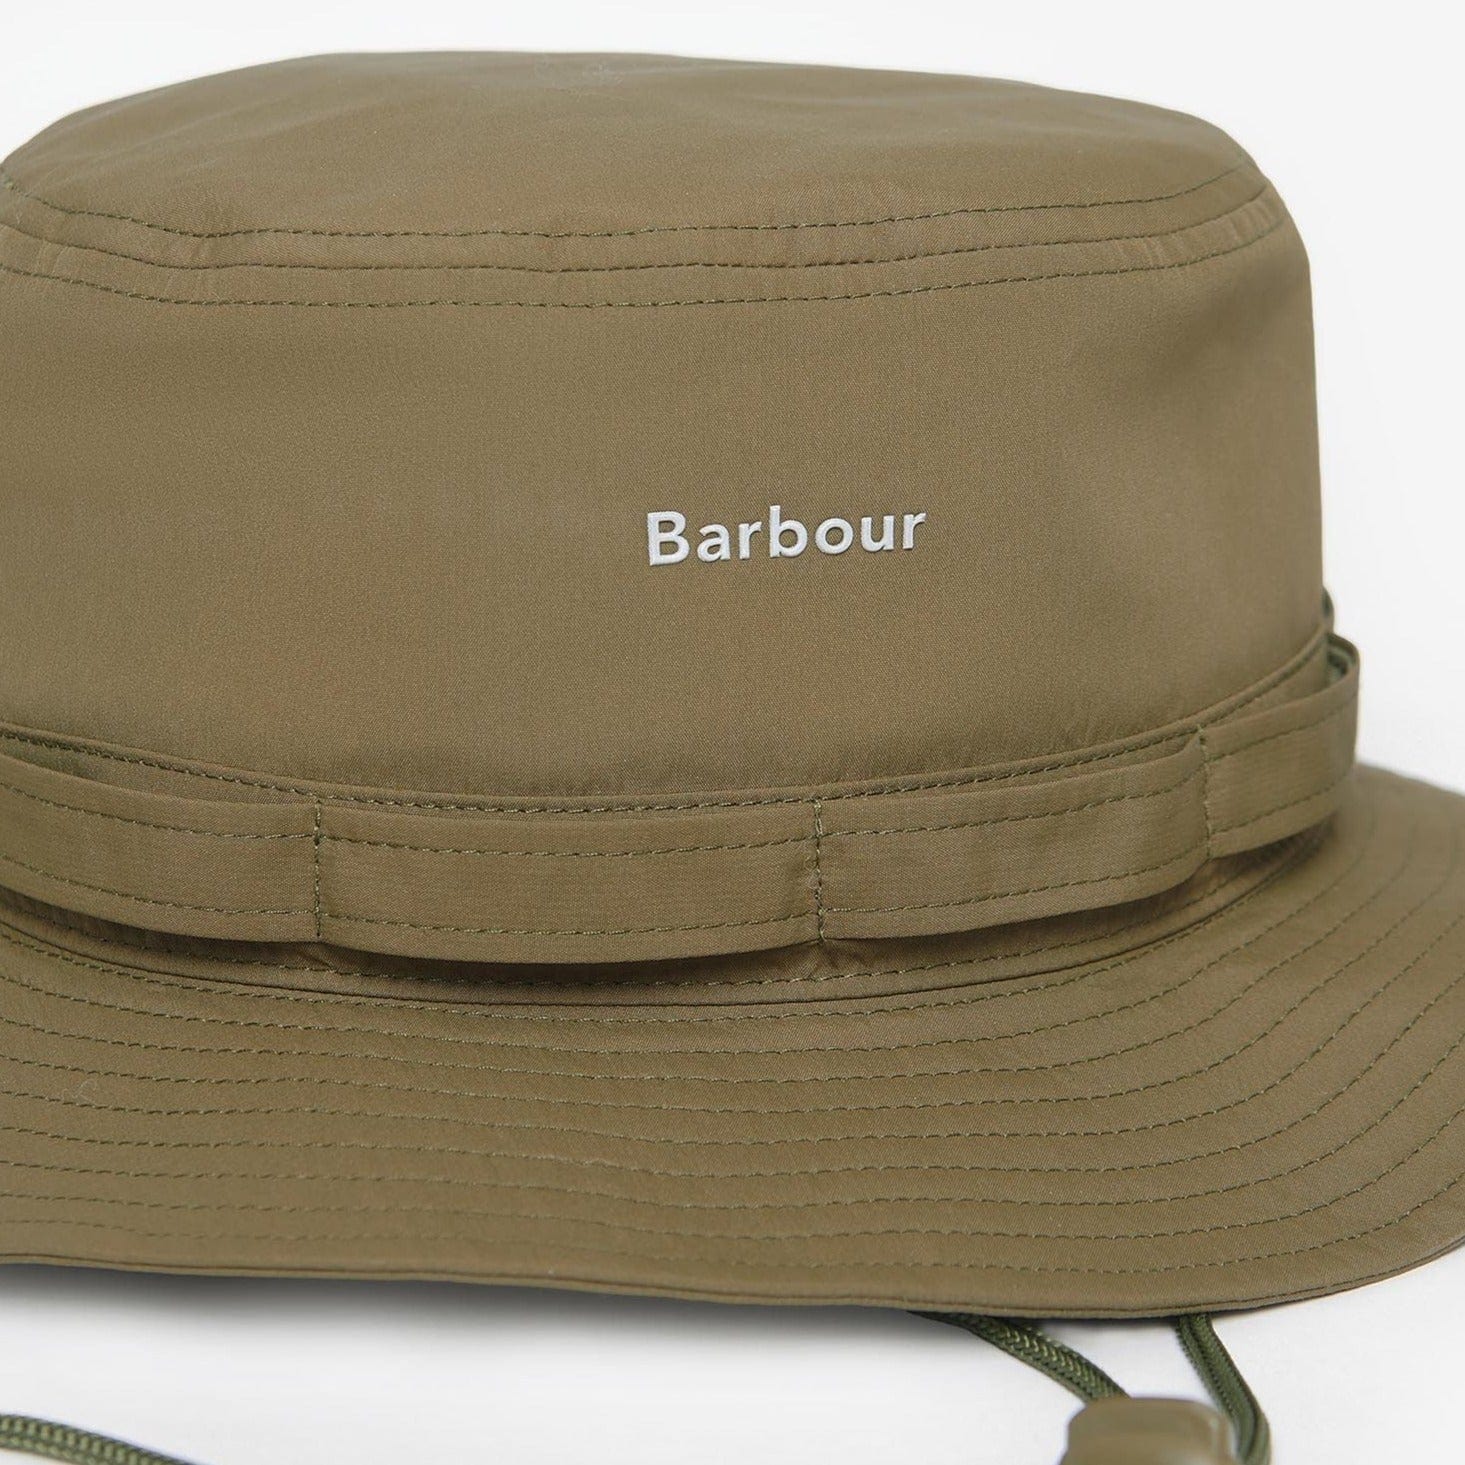 Barbour Teesdale Showerproof Bucket Hat in Army Green